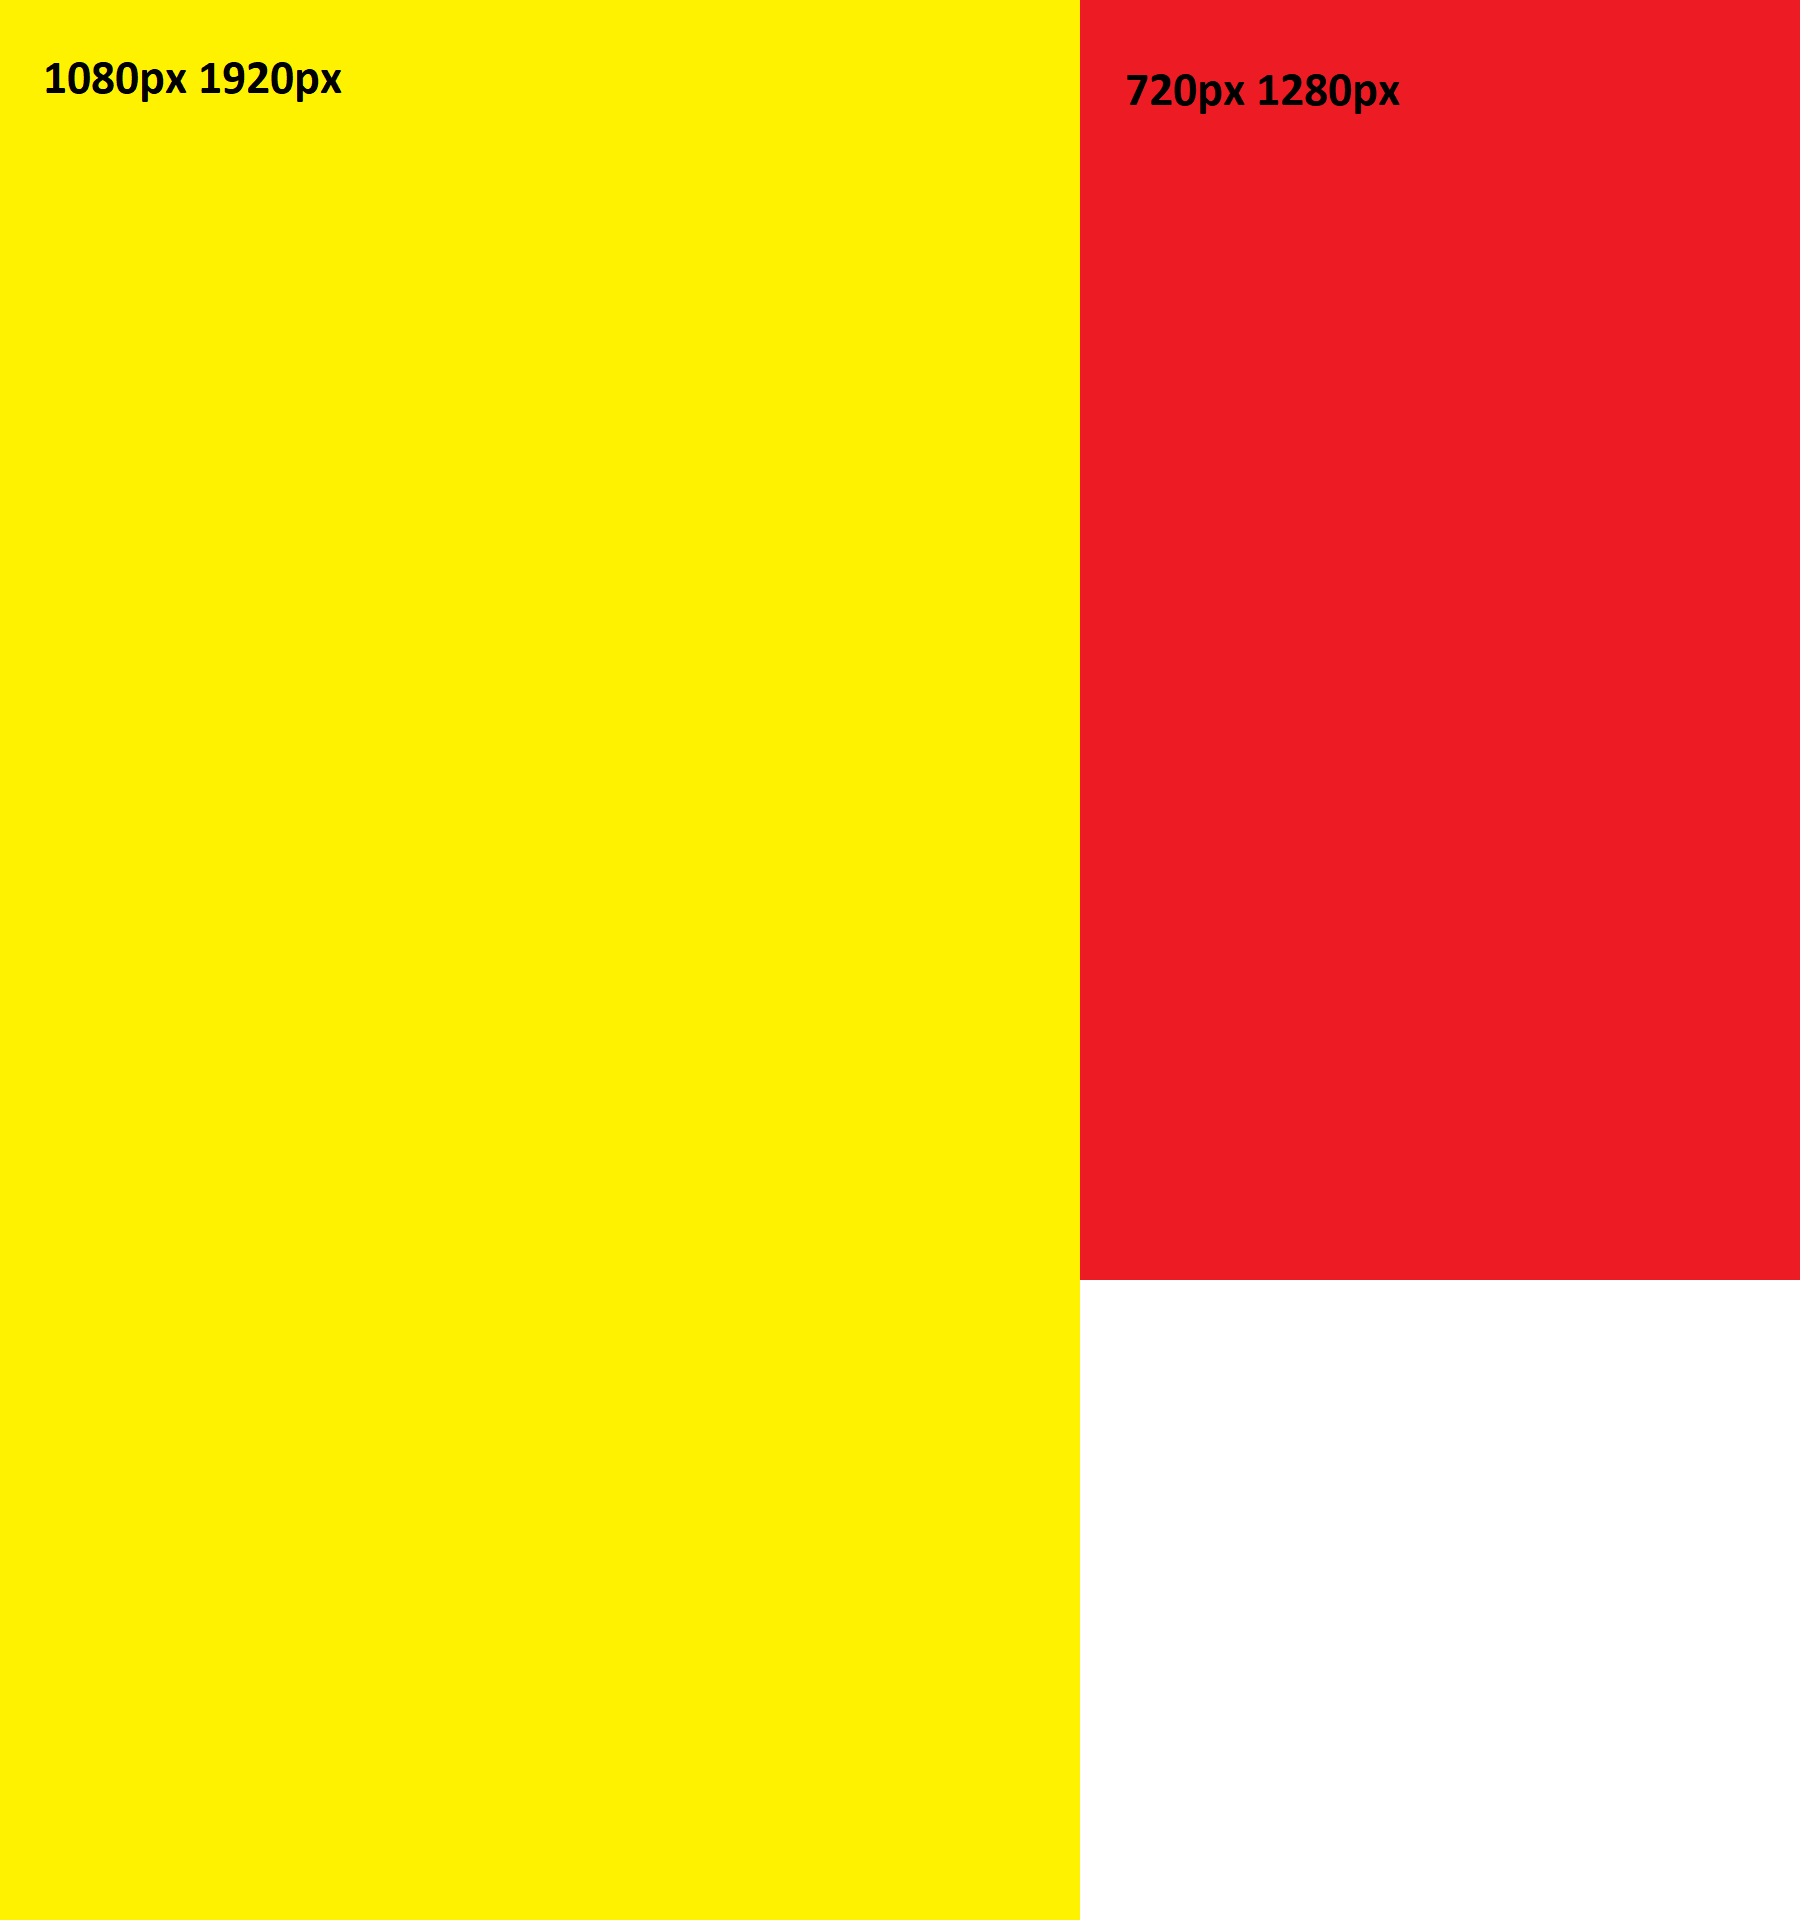 Um retângulo amarelo em pé com um texto escrito "1080px 1920px" e um retângulo menor de cor vermelha em pé com o texto escrito "720px 1280px".